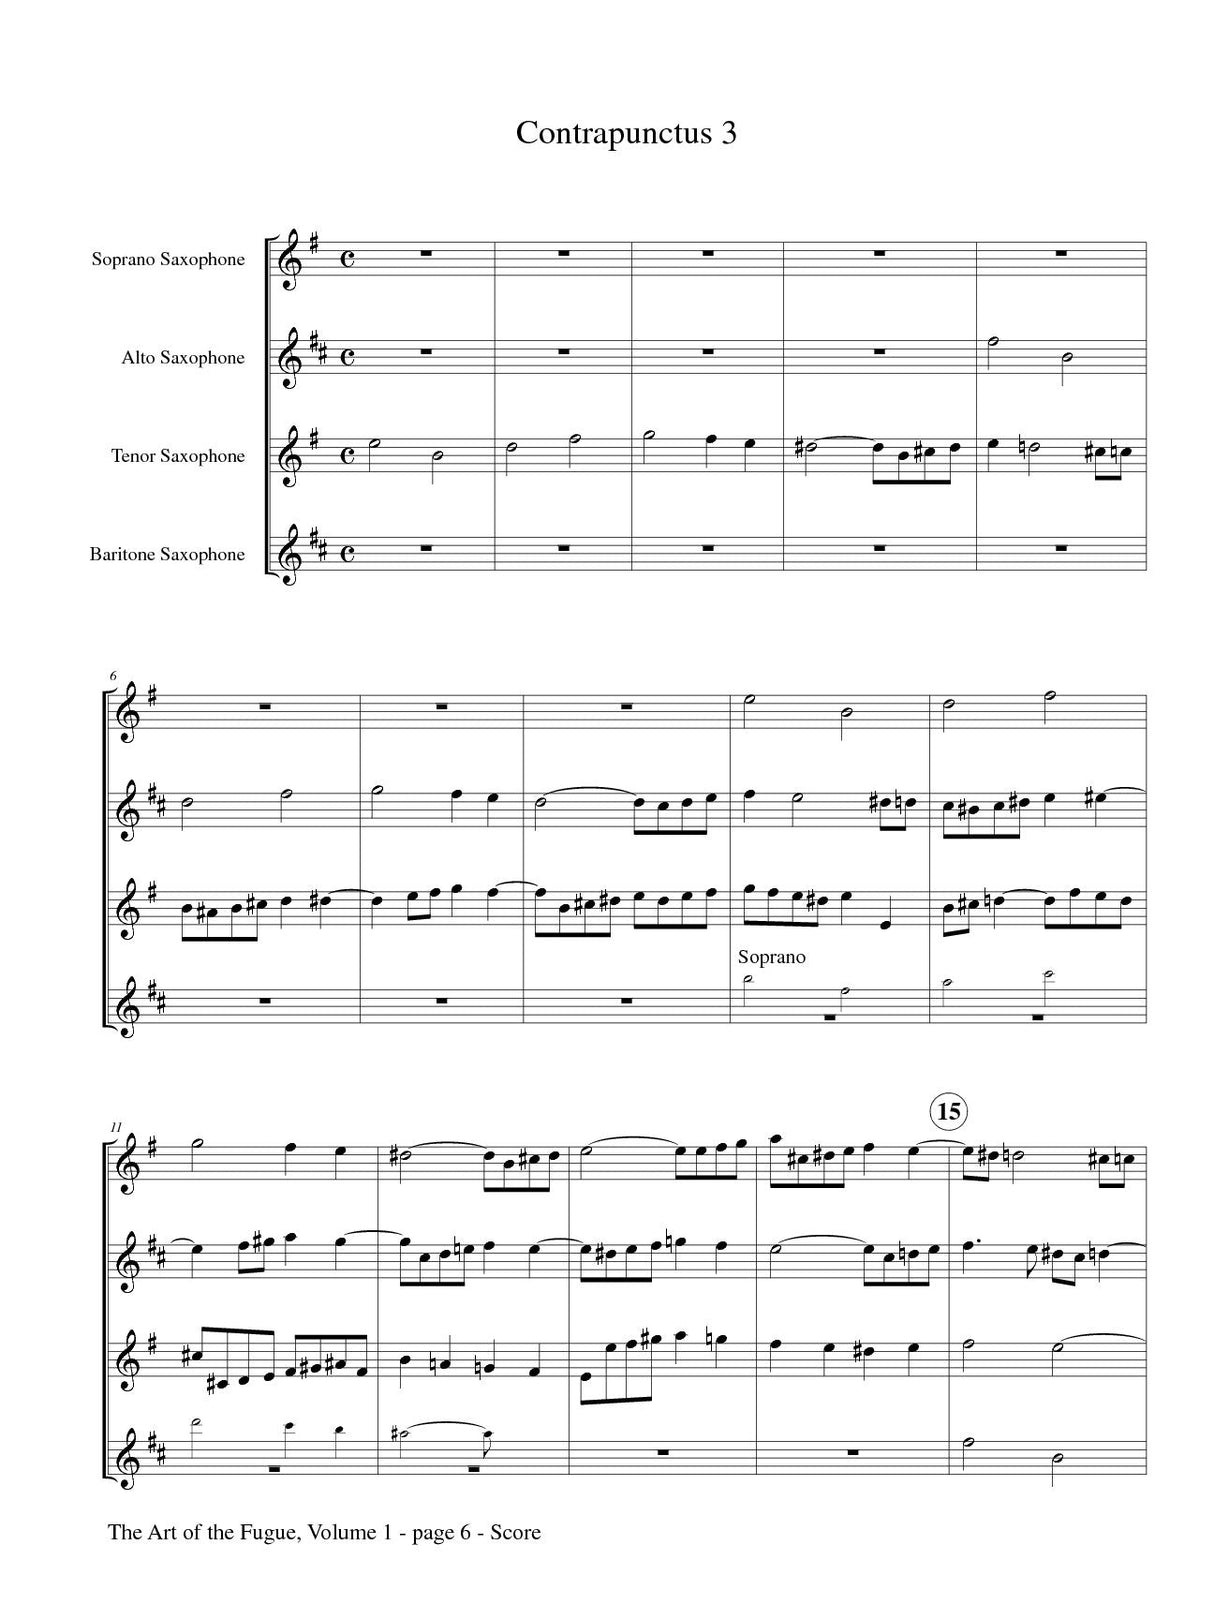 Bach: The Art of the Fugue - Volume 1 (arr. for sax quartet)